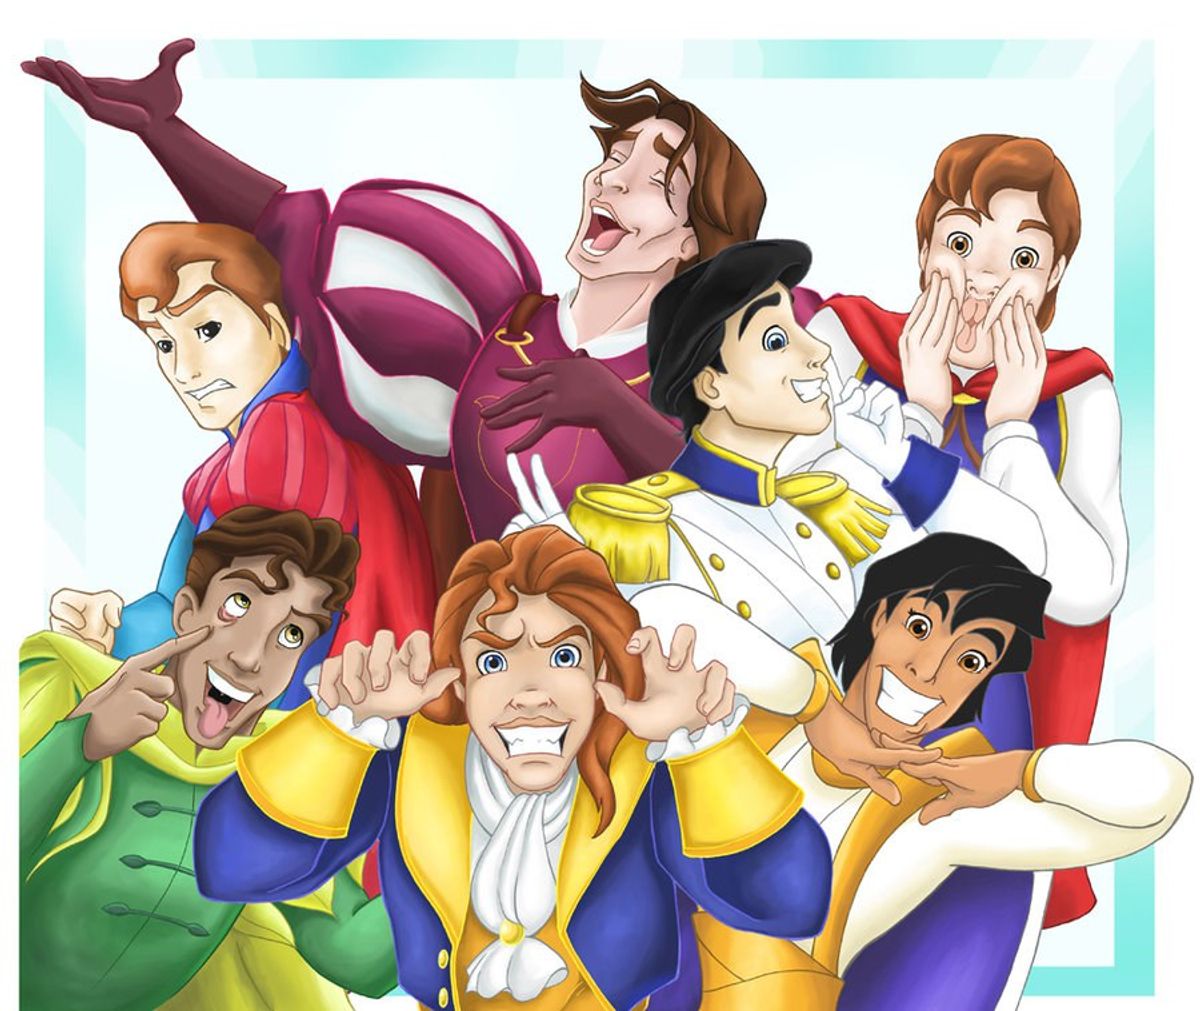 Disney Princes As Bachelorette Contestants